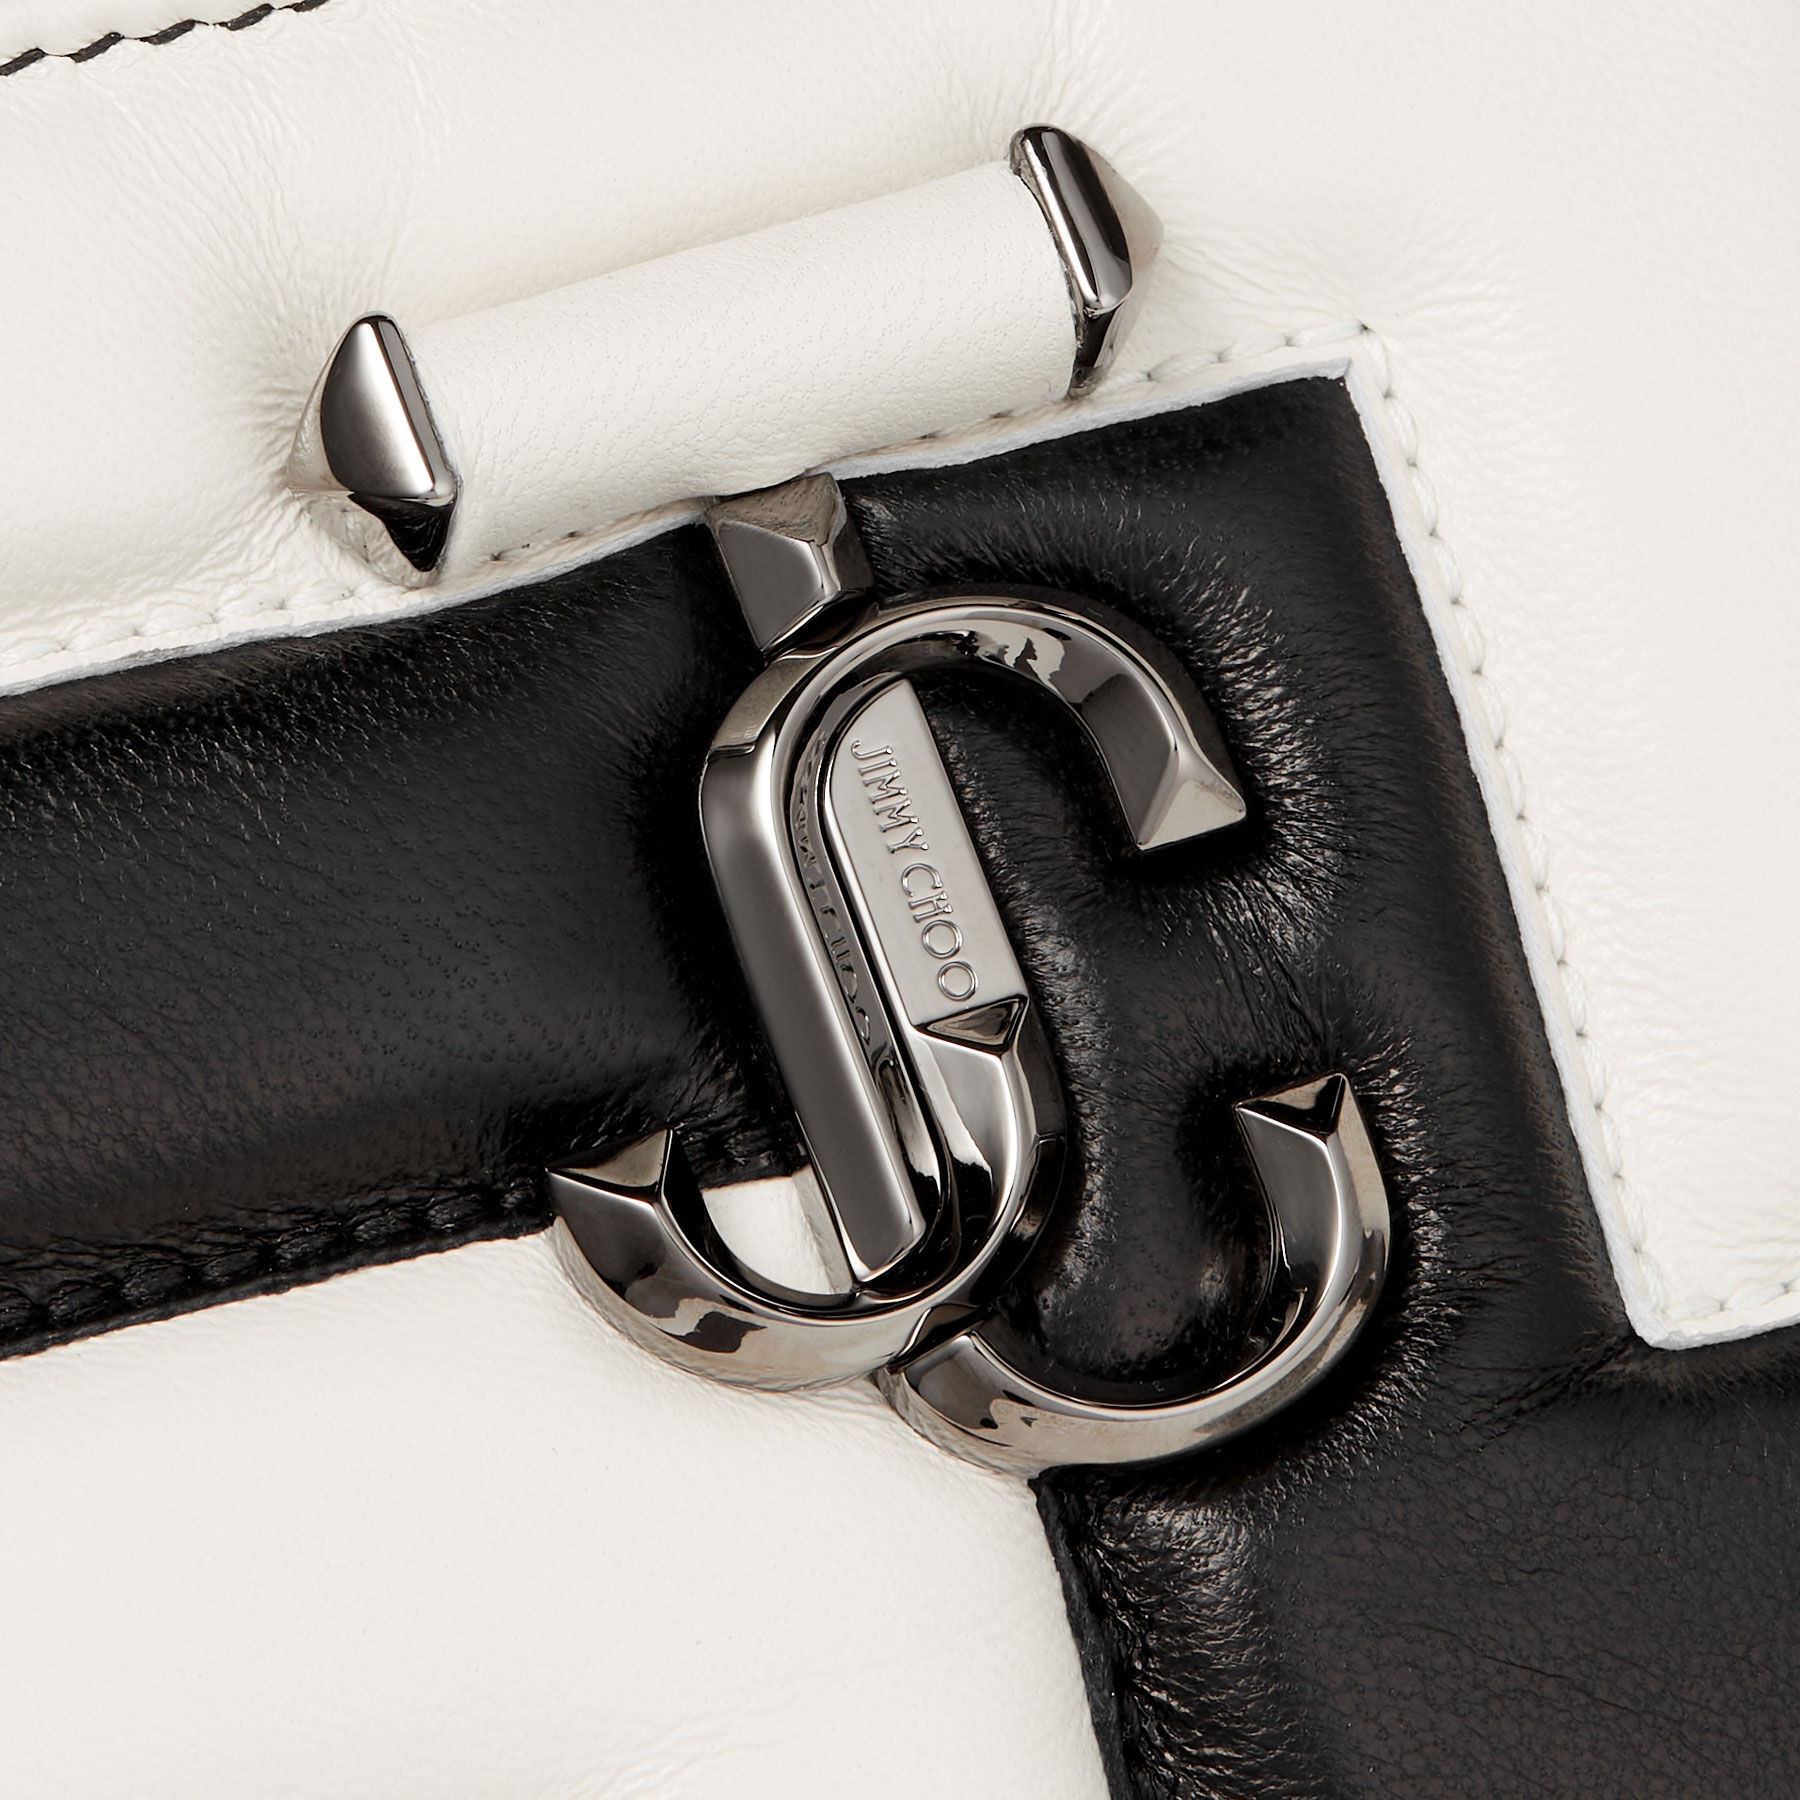 Avenue Slim Shoulder
Black and Latte Avenue Nappa Leather Shoulder Bag - 4